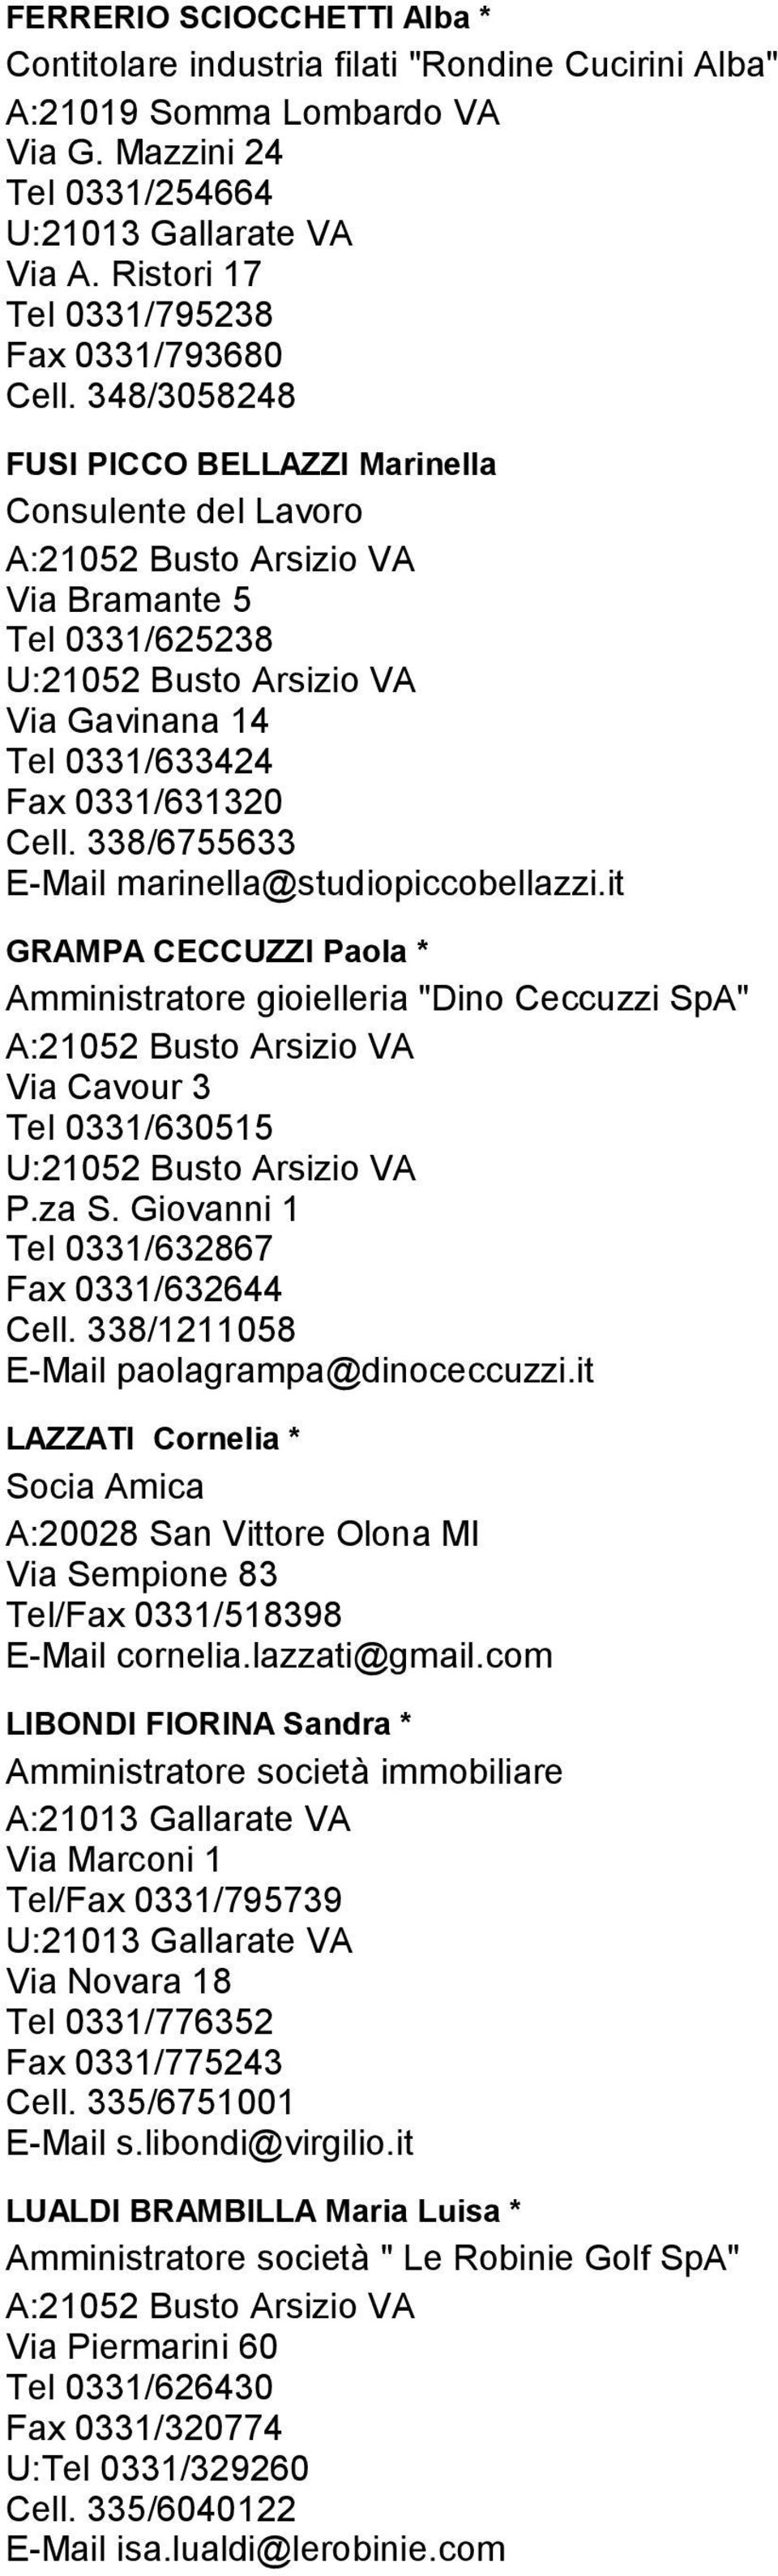 it GRAMPA CECCUZZI Paola * Amministratore gioielleria "Dino Ceccuzzi SpA" Via Cavour 3 Tel 0331/630515 P.za S. Giovanni 1 Tel 0331/632867 Fax 0331/632644 Cell.